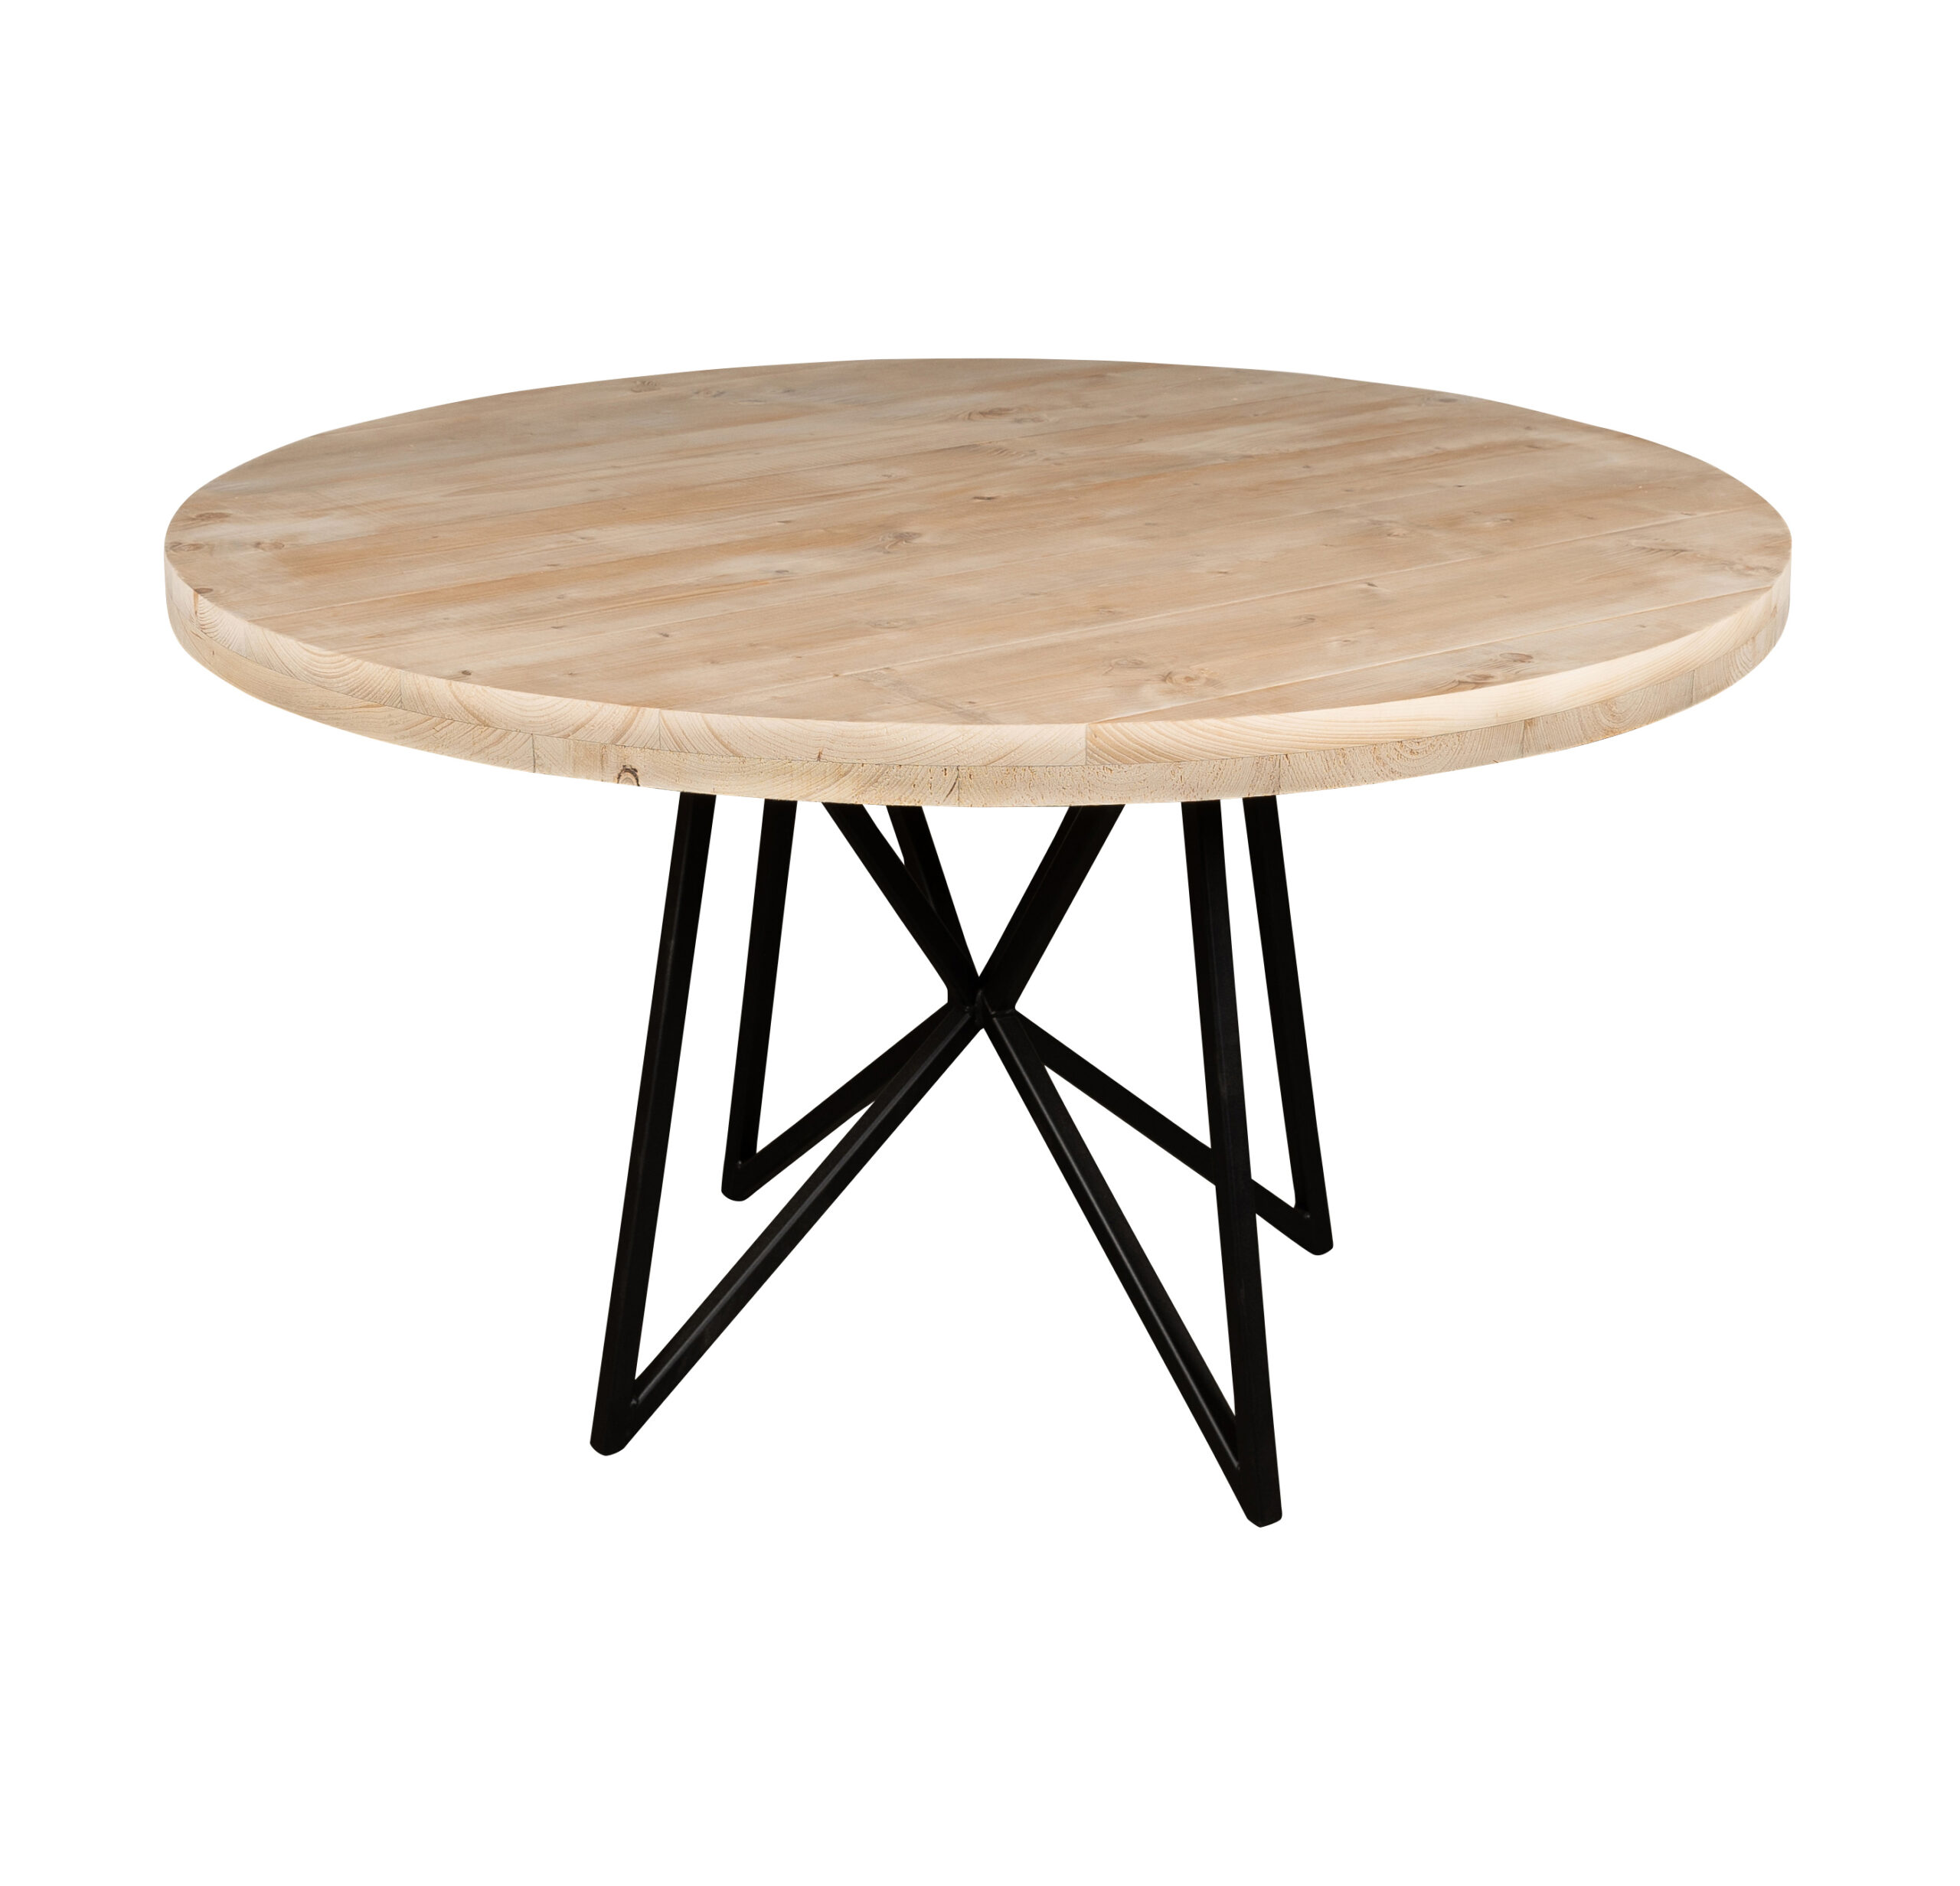 rond - Mooie ronde houten tafels voor buiten - op